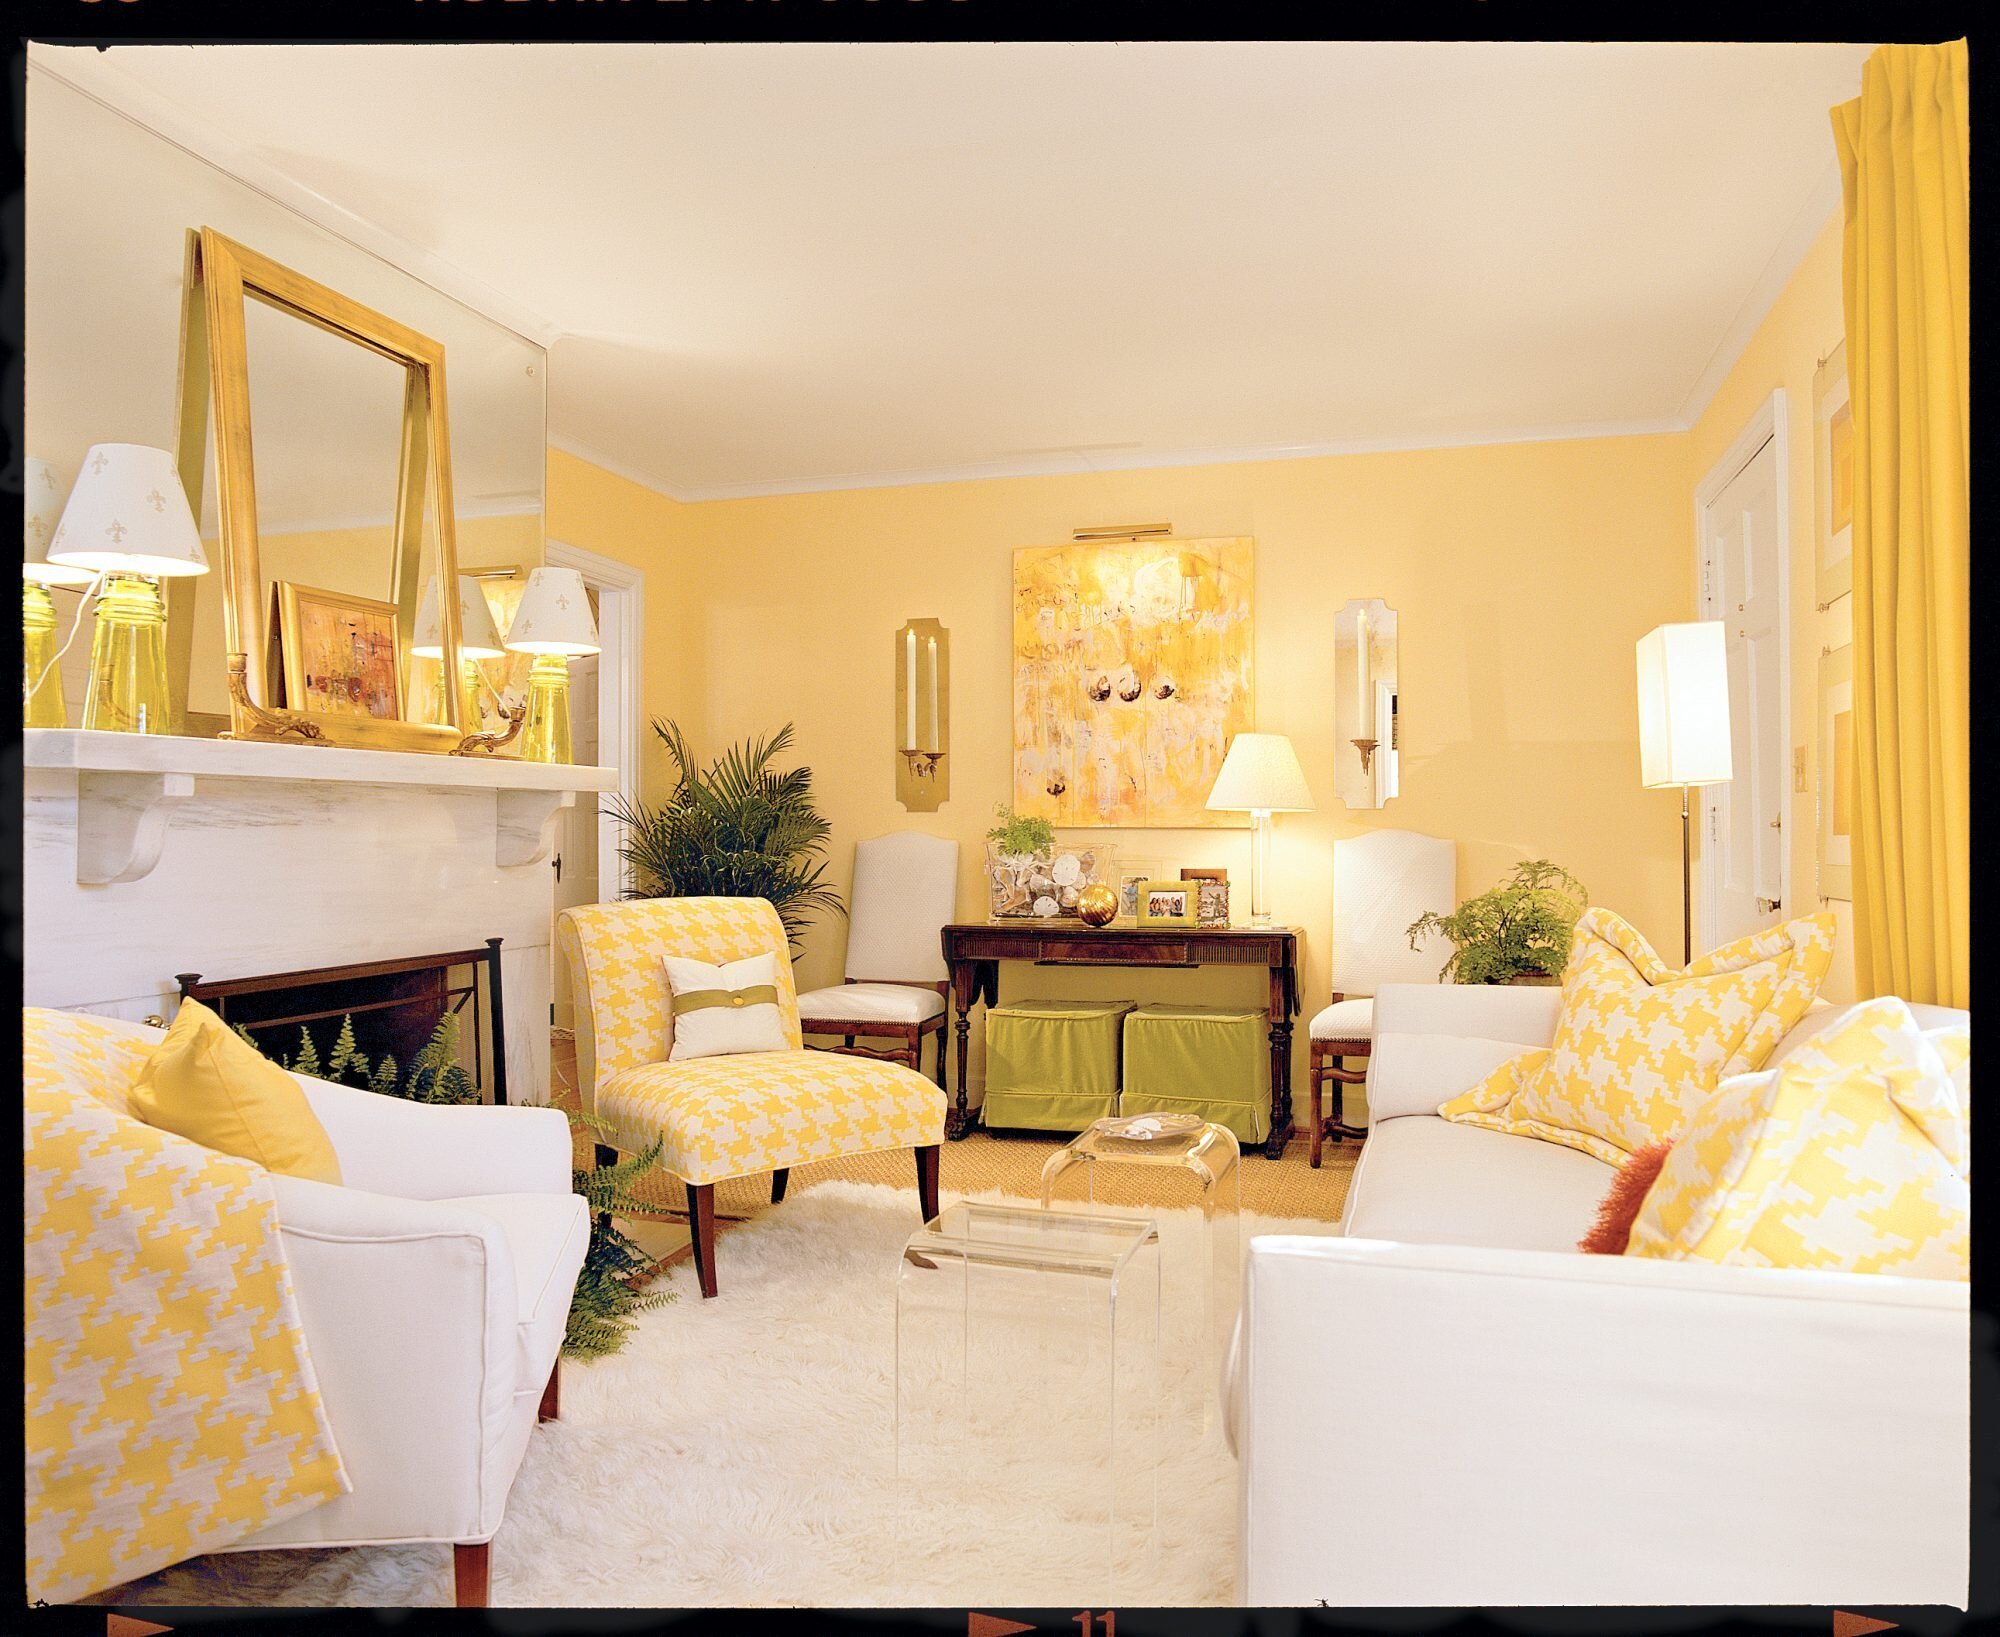 Как будут смотреться желтые обои в интерьере, фото спальни, детской, гостиной, кухни, примеры сочетания серого, белого, синего цвета с обоями в желтых тонах